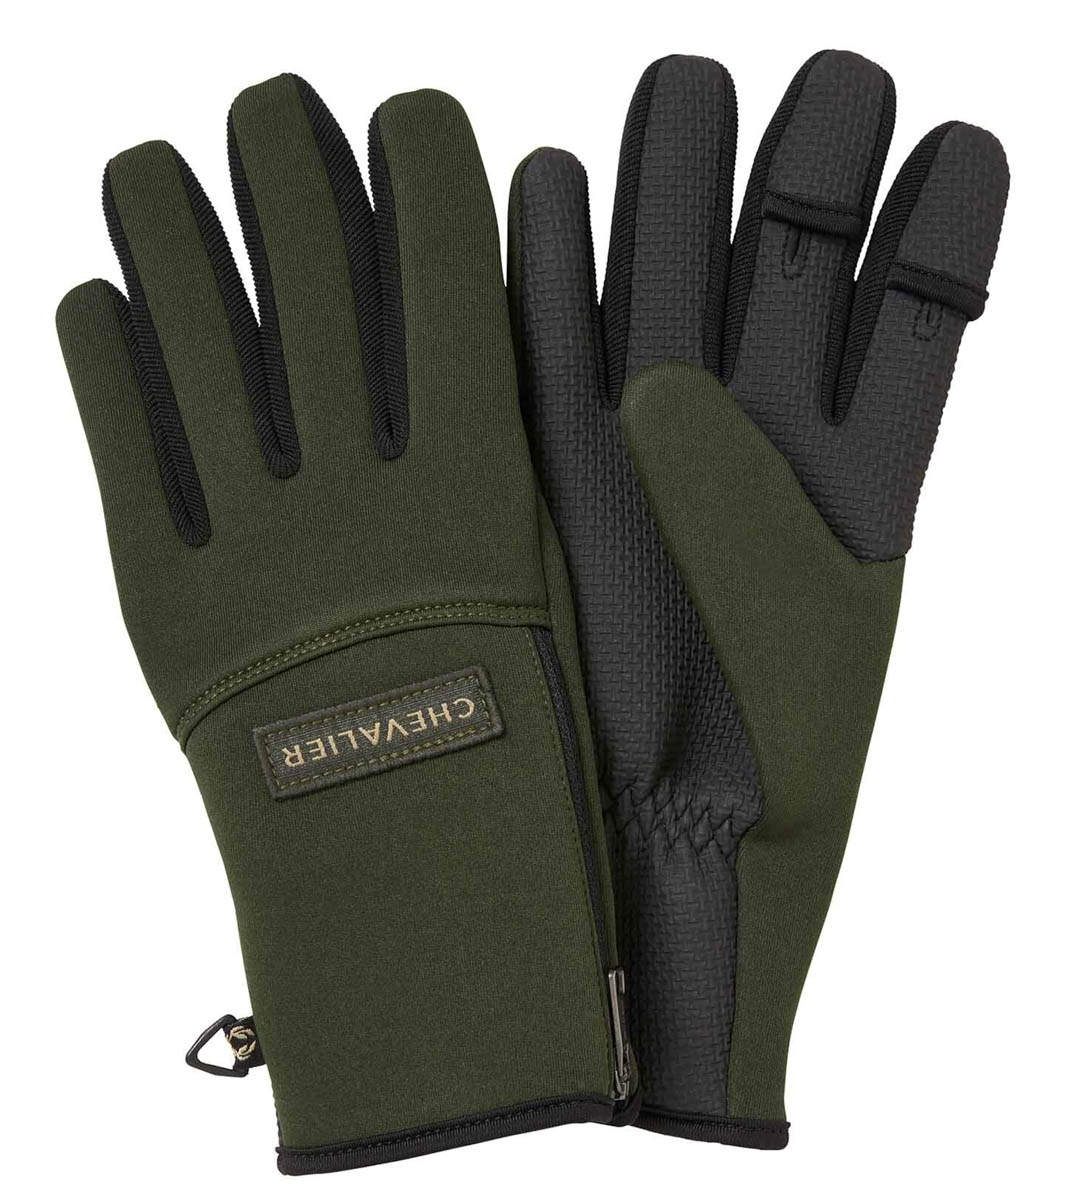 Chevalier Handschuhe Scale Neopren-Handschuh Wasserabweisende Neopren-Handschuhe mit griffiger Gummi-Handinnenseite. 